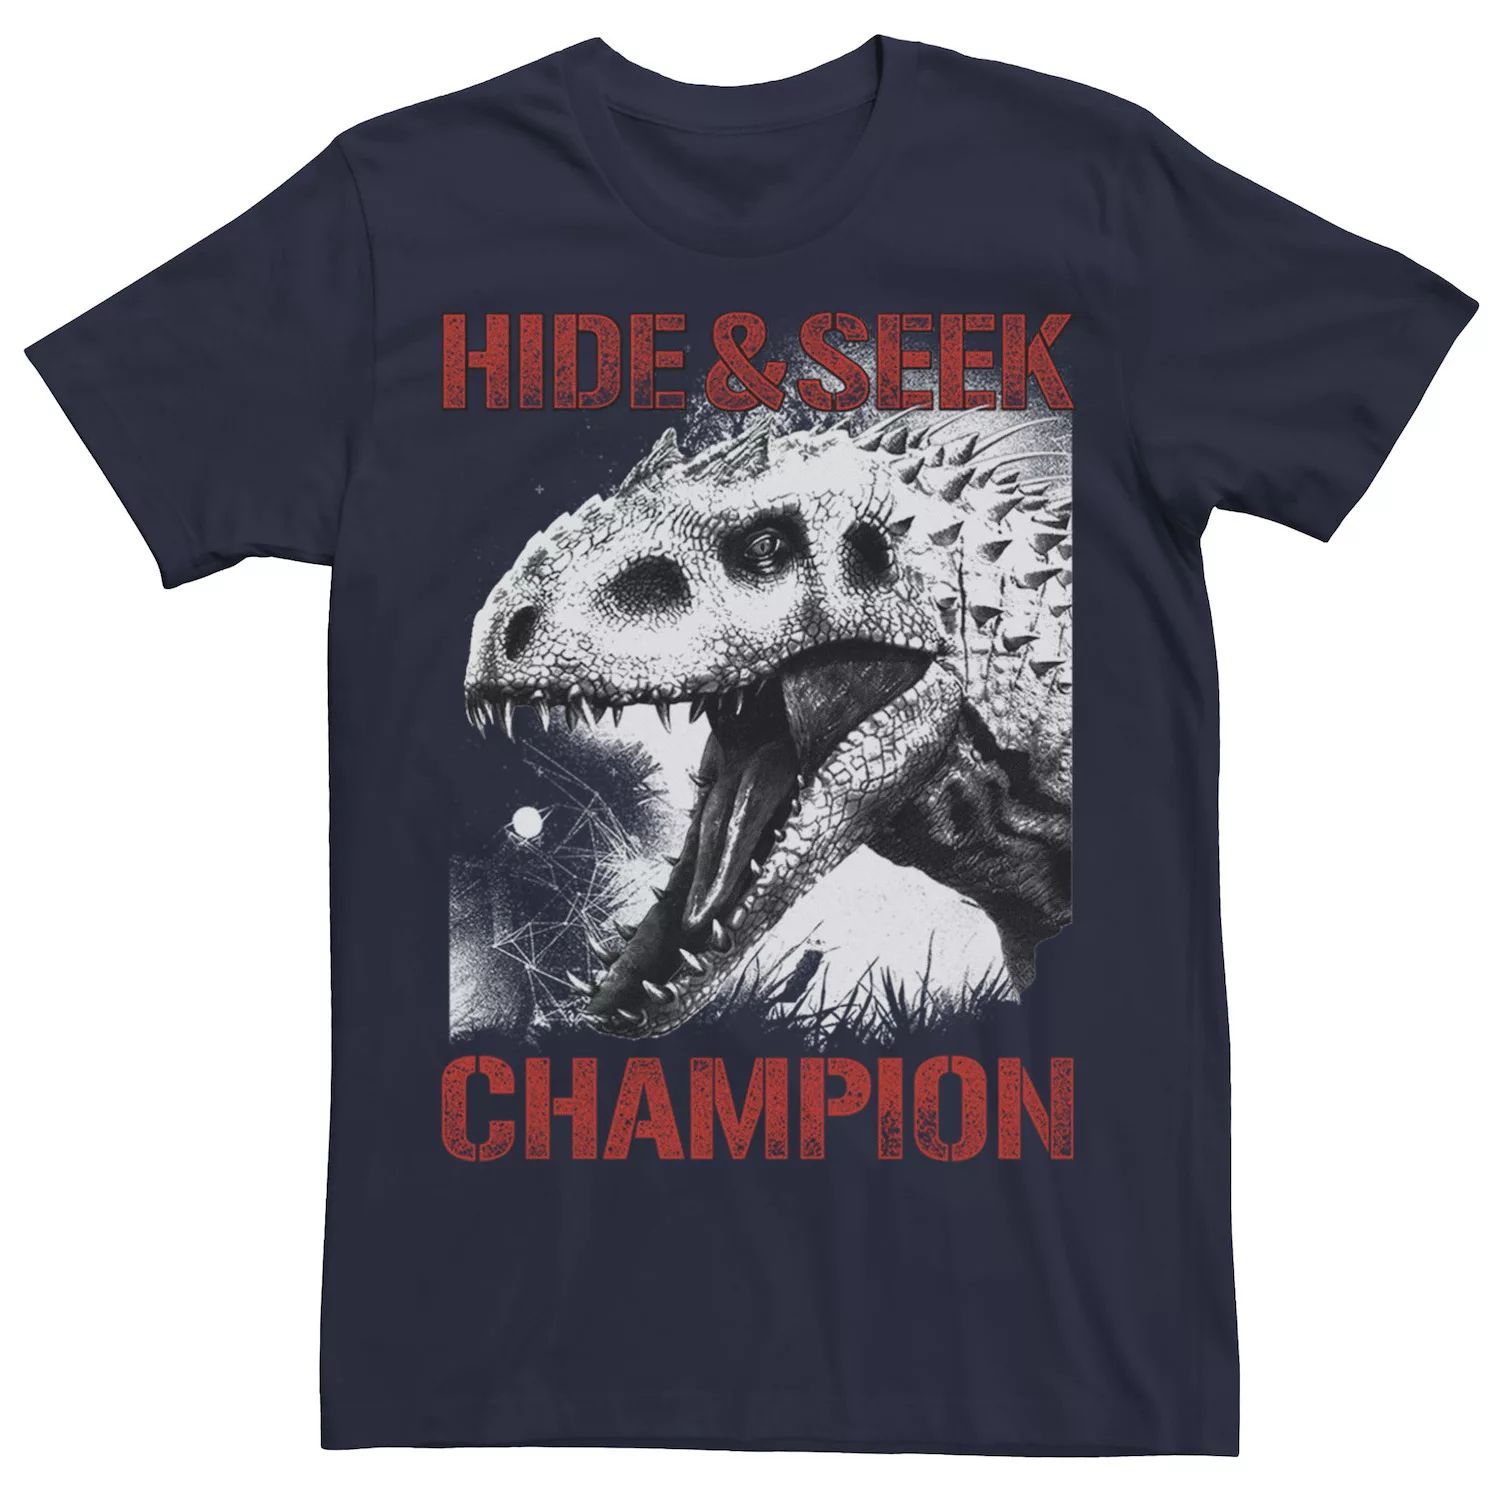 Мужская футболка Jurassic World Indominus Hide & Seek Champ с рисунком Licensed Character, синий